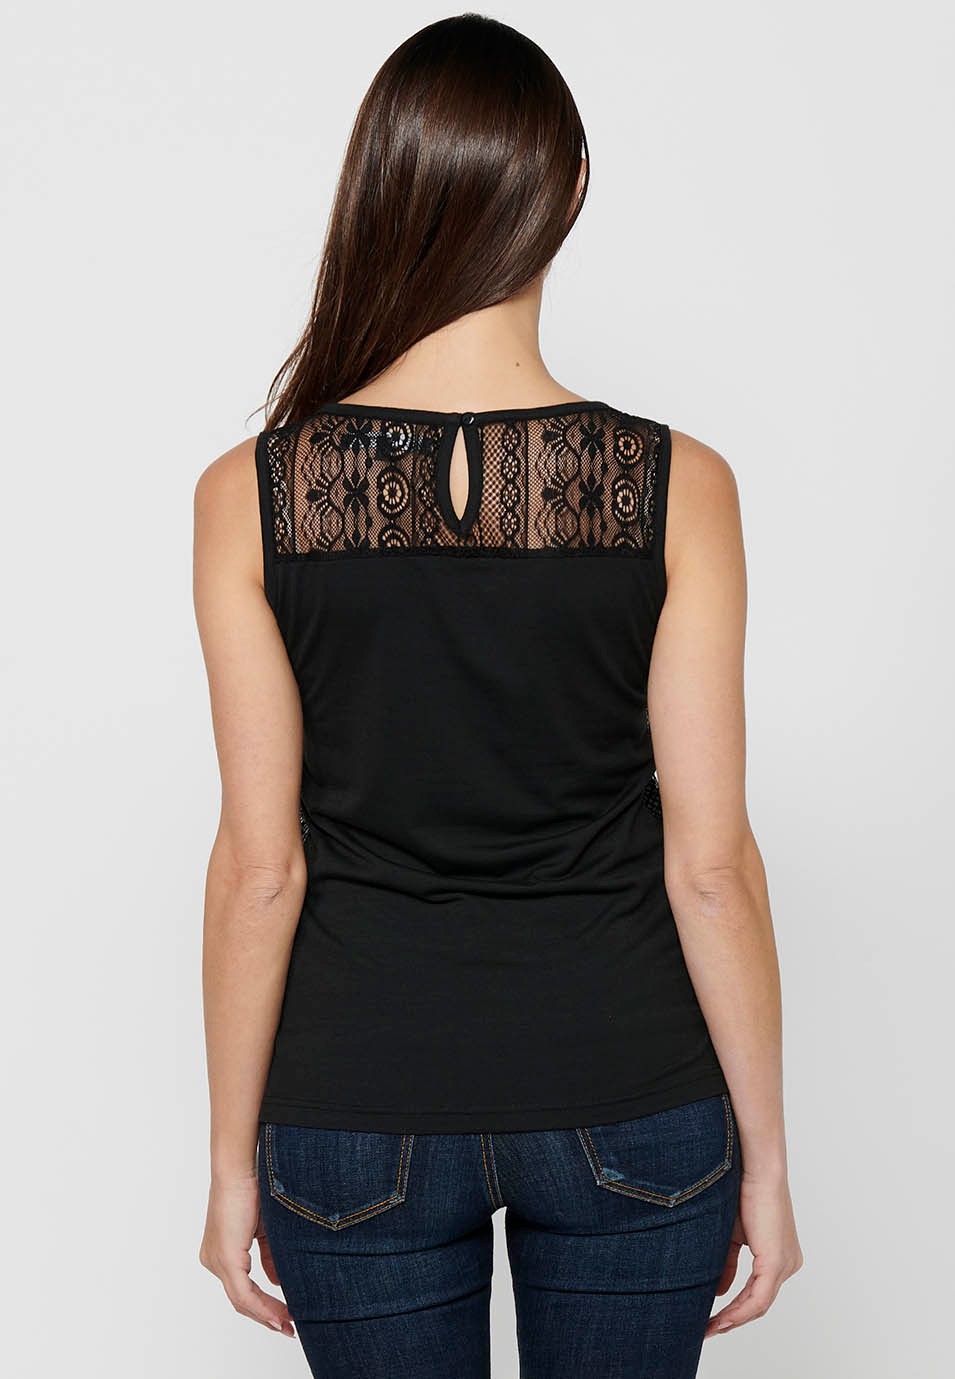 T-shirt sans manches avec broderie noire sur le devant pour femme